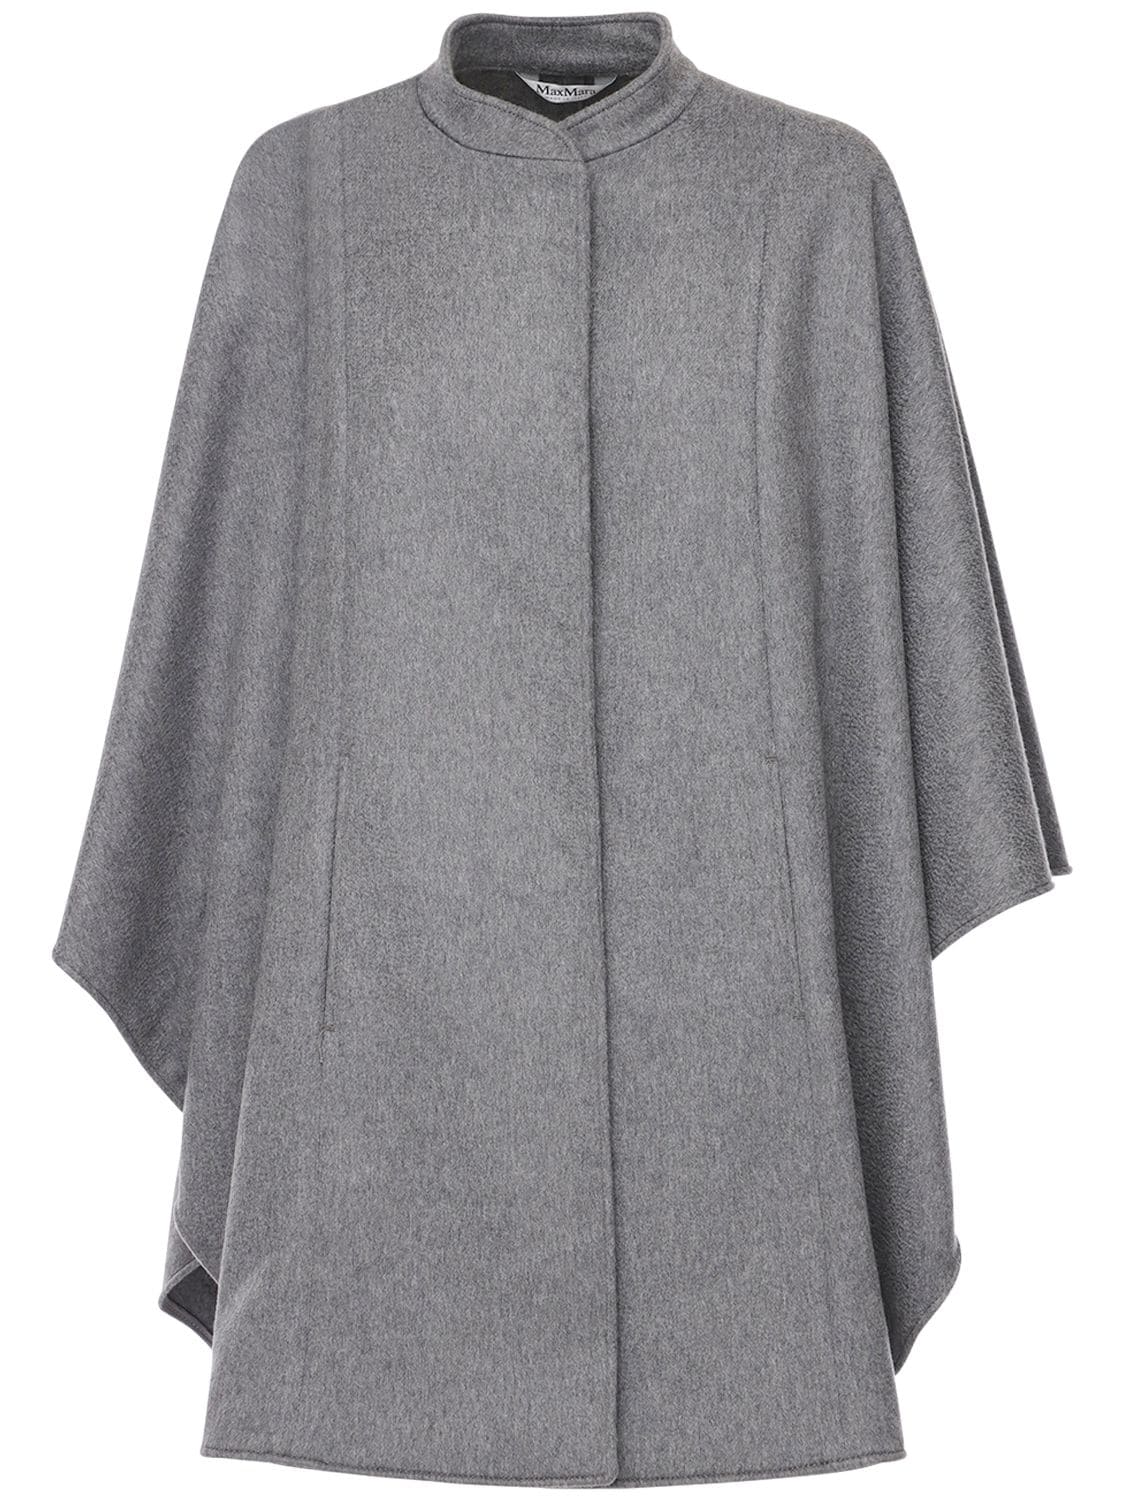 Max Mara Addi Wool & Cashmere Cape In Grey